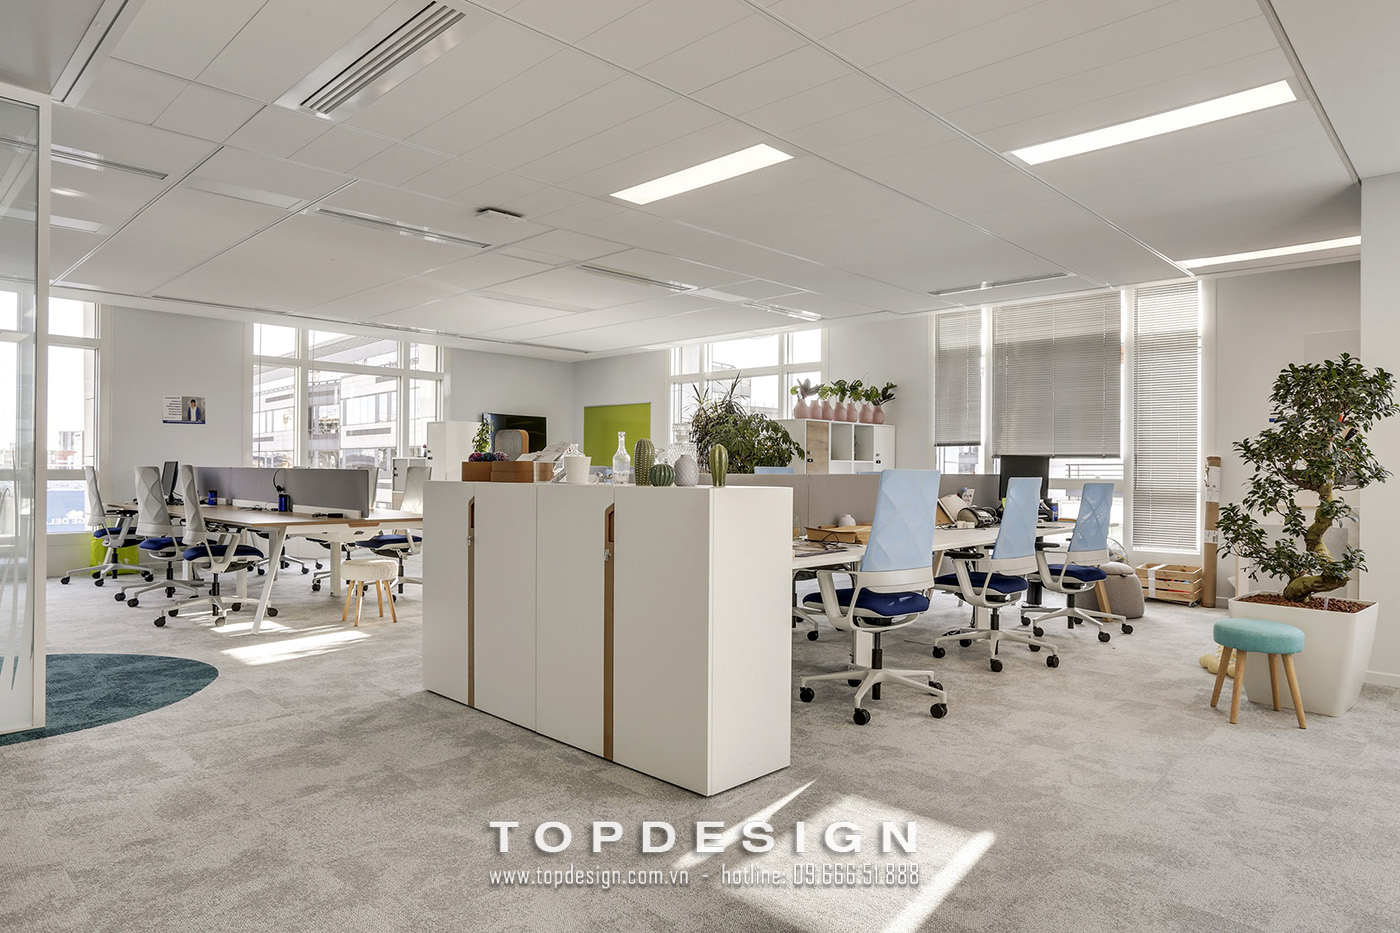 1.Mẫu thiết kế hệ thống ánh sáng văn phòng đạt chuẩn hiện đại_TOPDESIGN